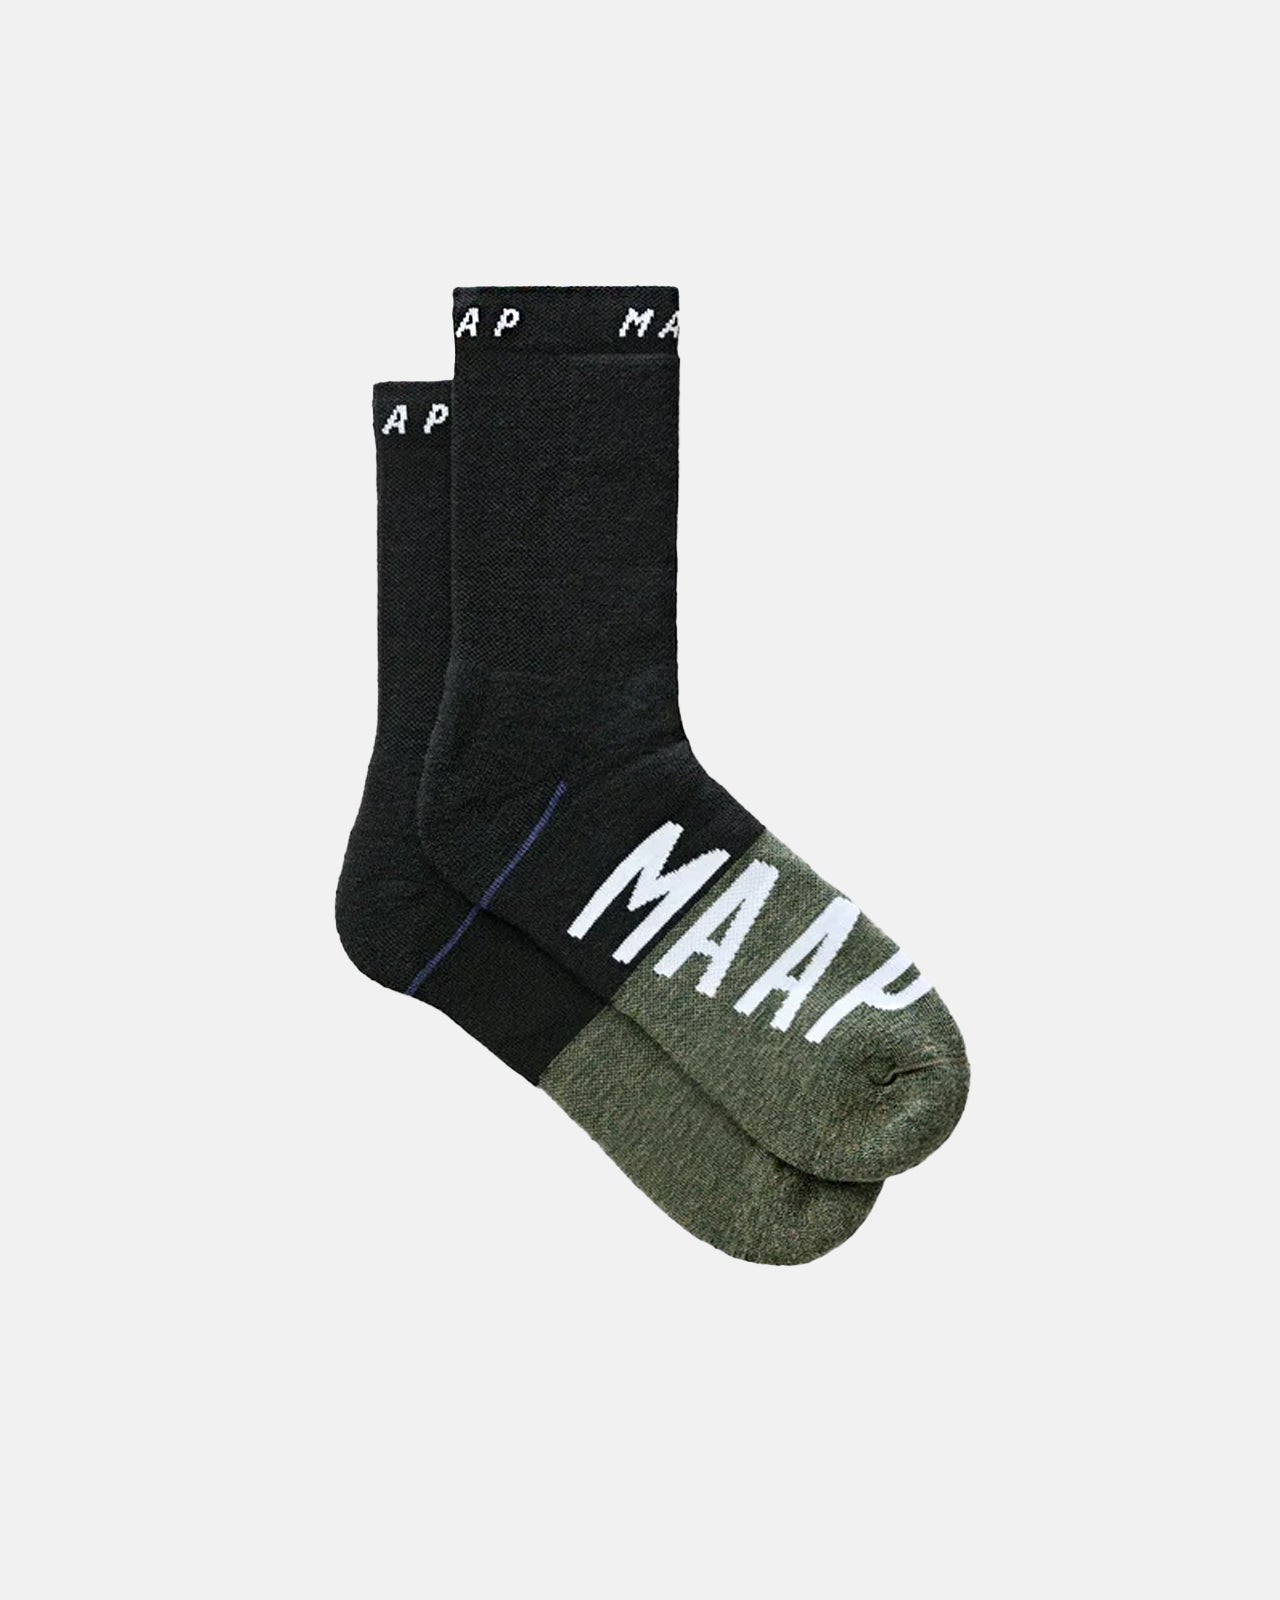 Apex Wool Sock - Black - MAAP